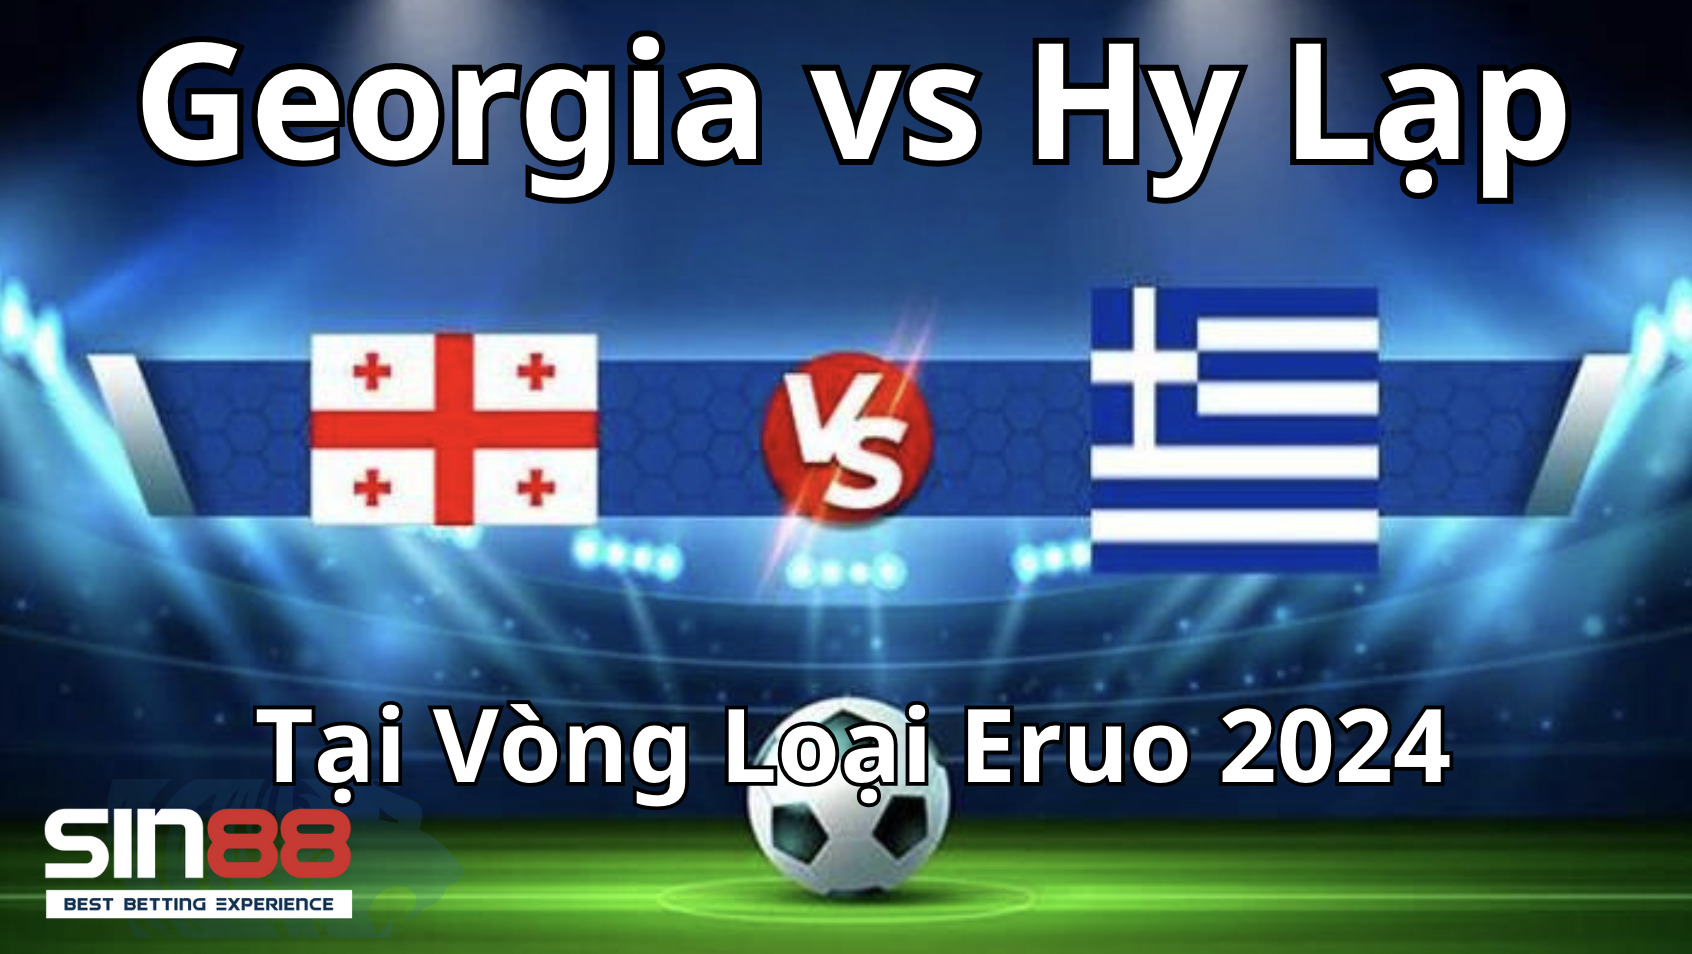 Nhận định bóng đá vòng loại Euro 2024 về hai đội Georgia vs Hy Lạp